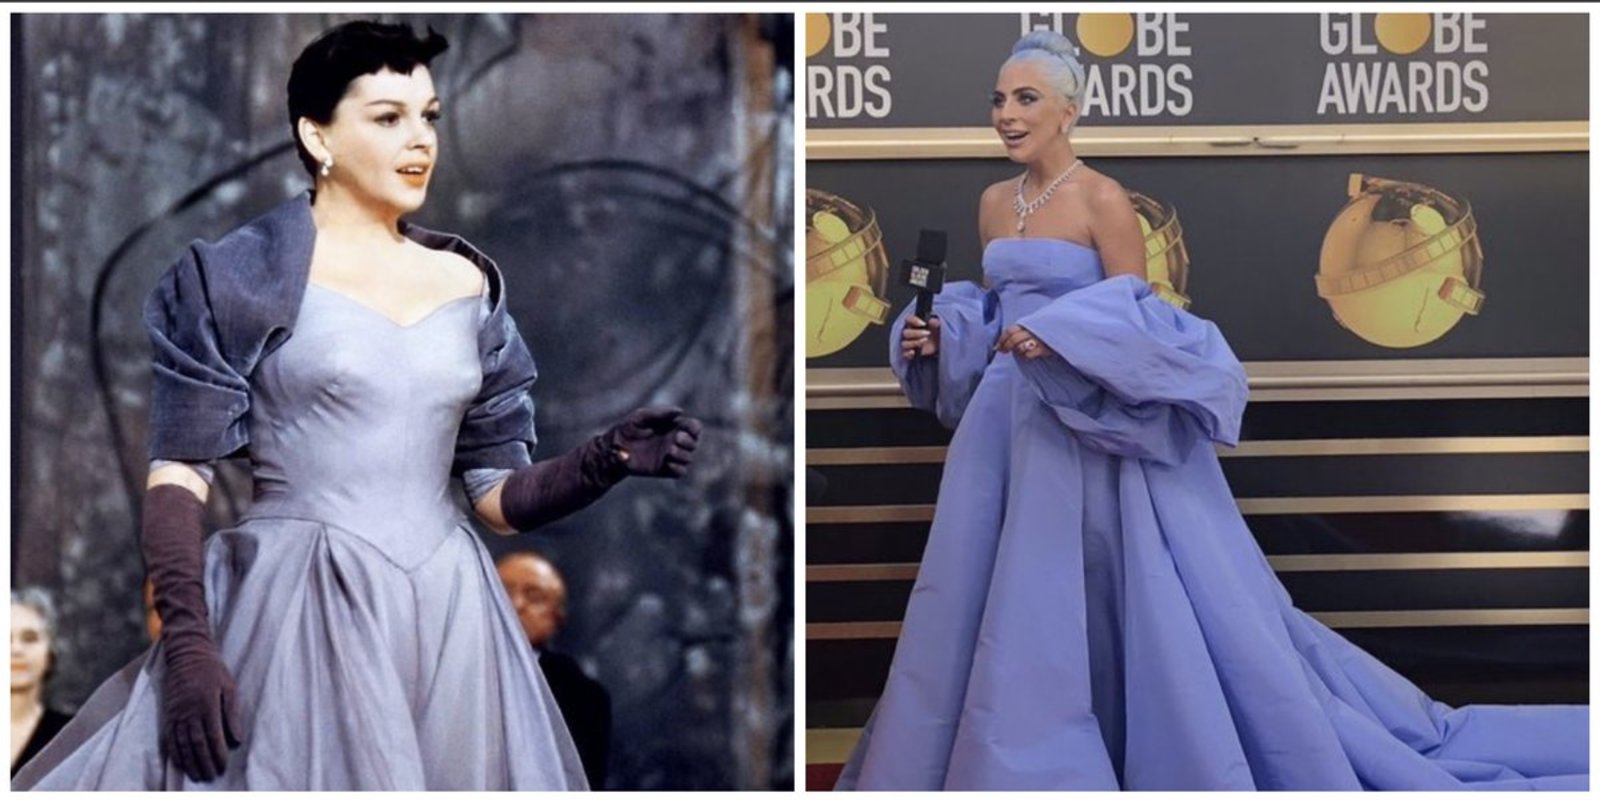 Tributo. El vestido de Gaga hace referencia al que utilizó Judy Garland en la versión de Nace una estrella de 1954. (ESPECIAL)